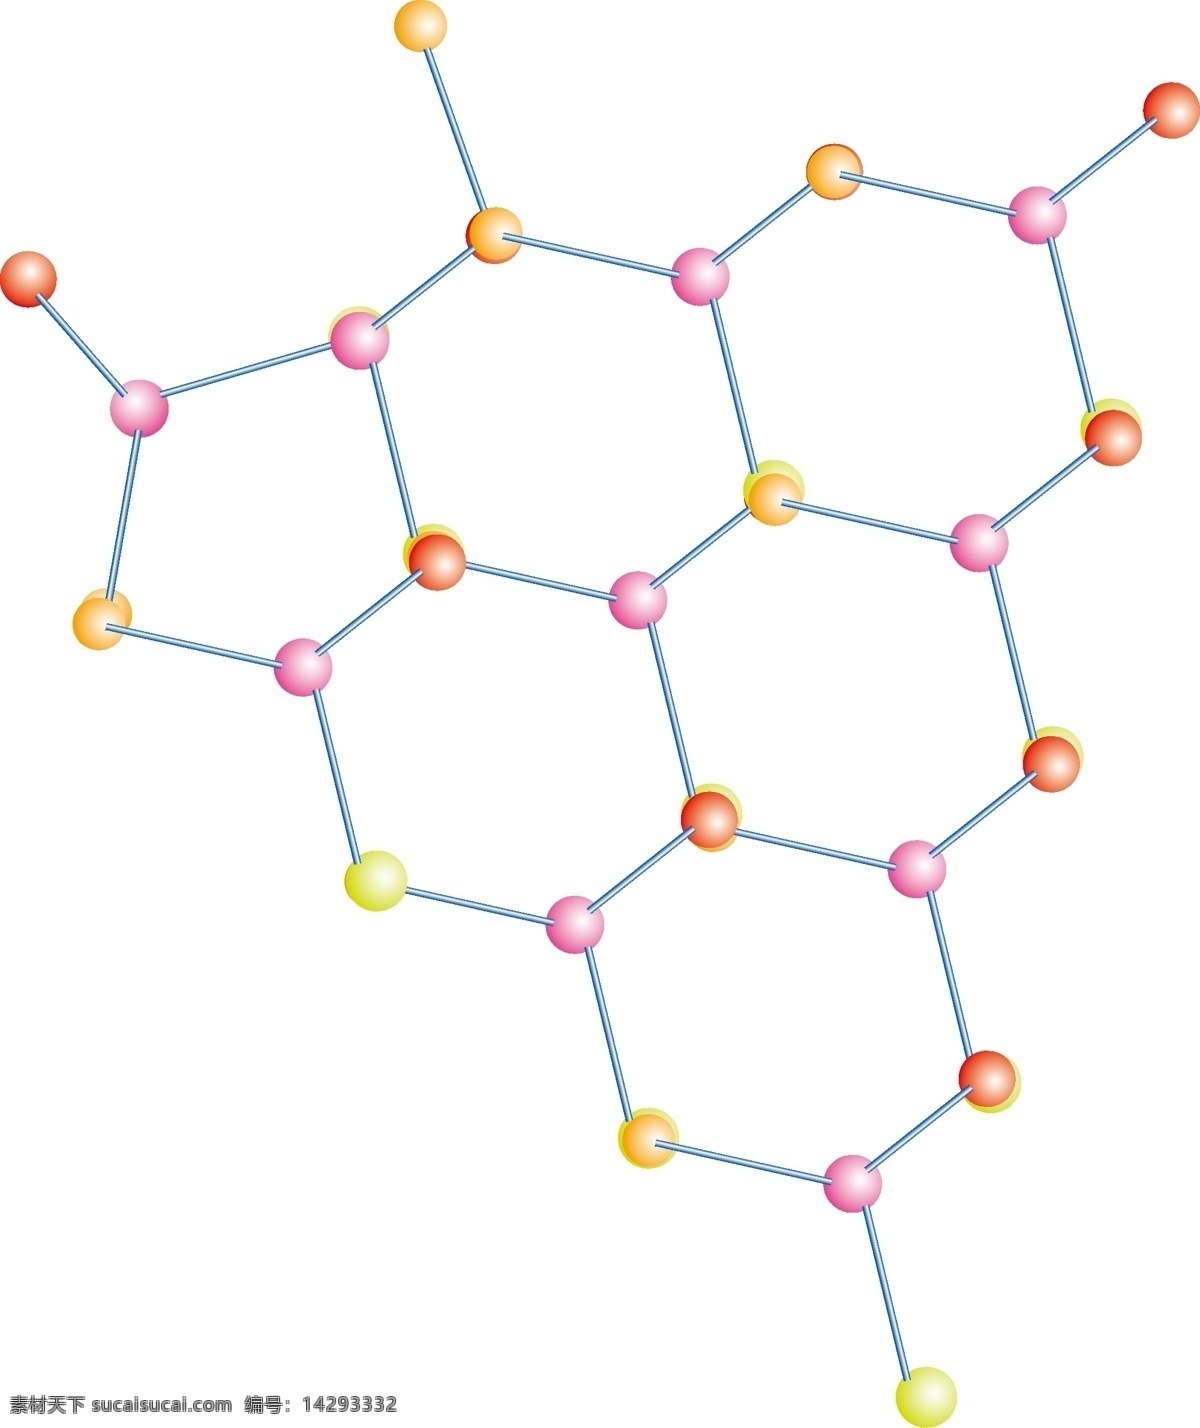 细胞 分子式 矢量 分子 结构图 其他矢量 矢量素材 矢量图库 原子 电脑科技 背景 化学 矢量花纹 花纹花边 底纹边框